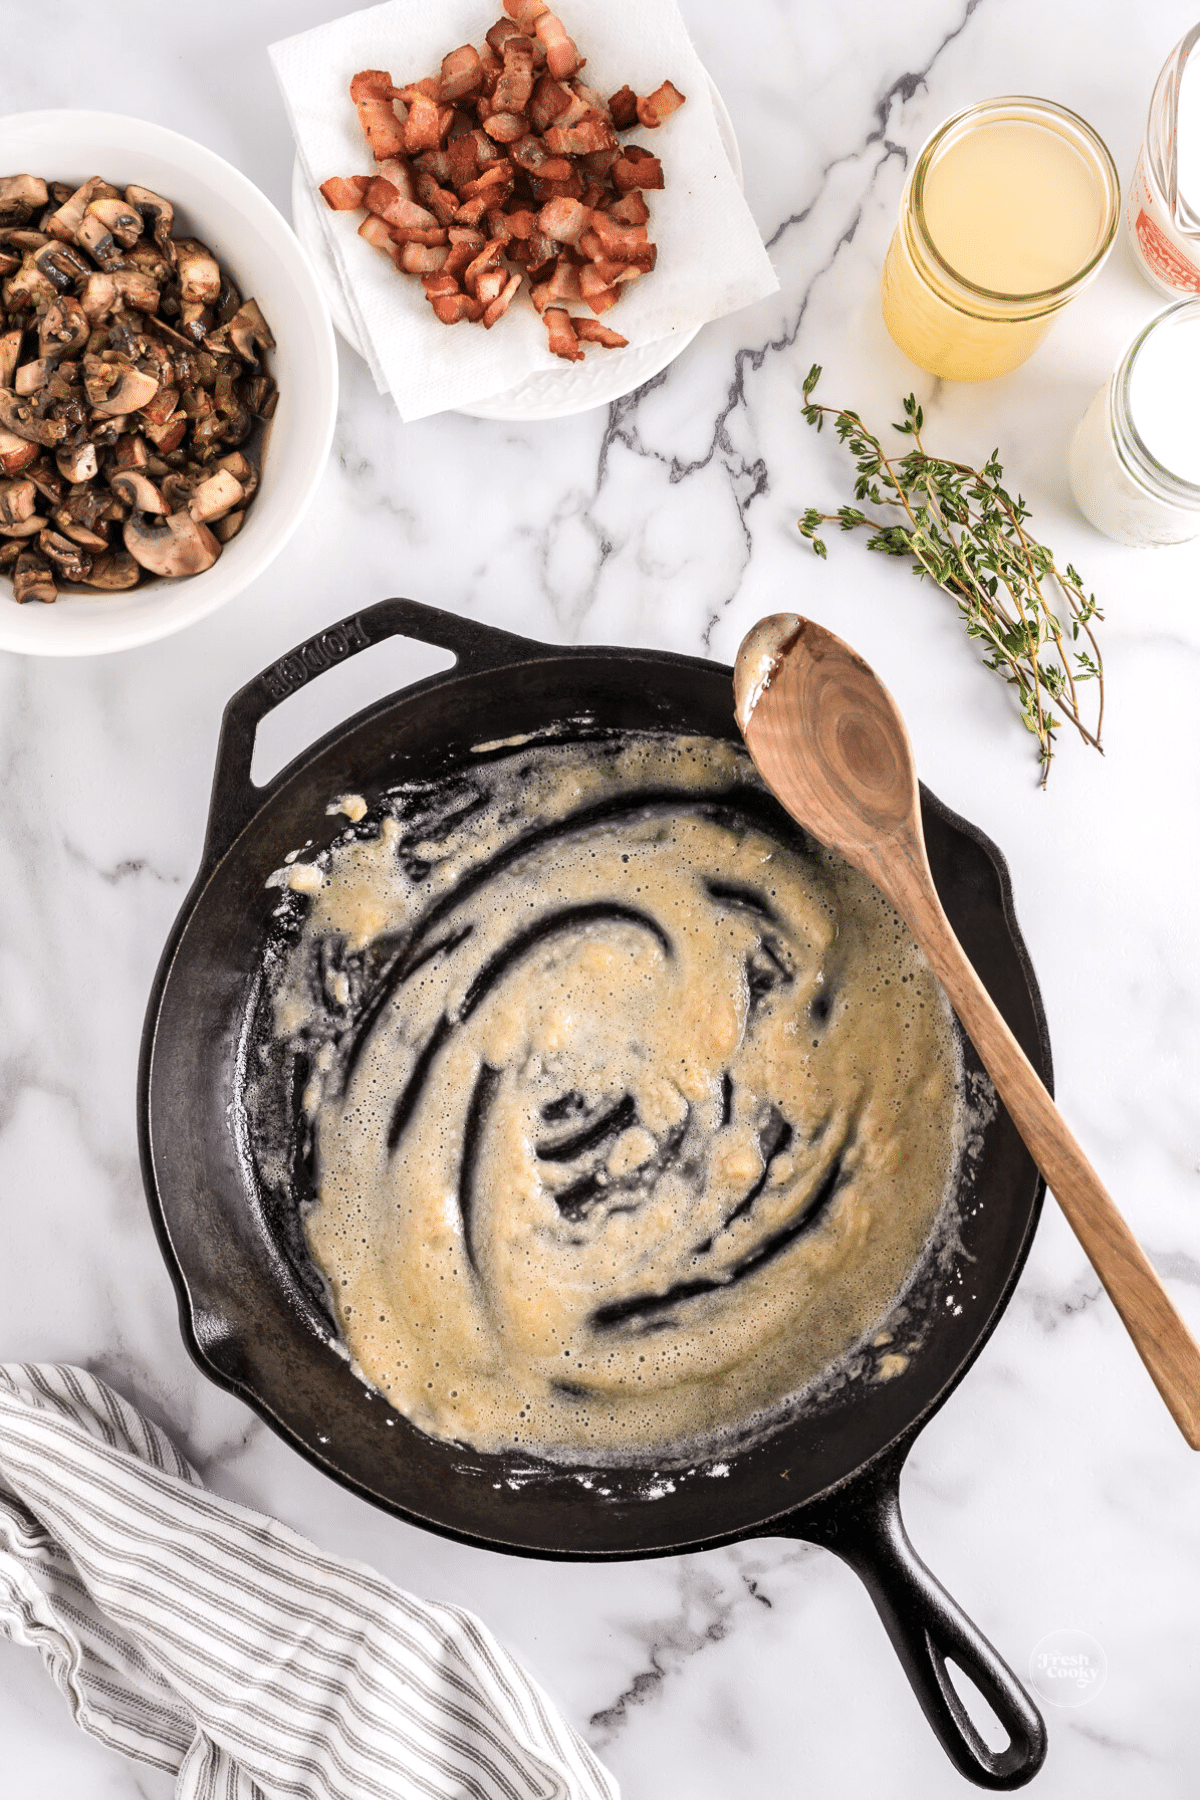 Make a roux in saucepan. 